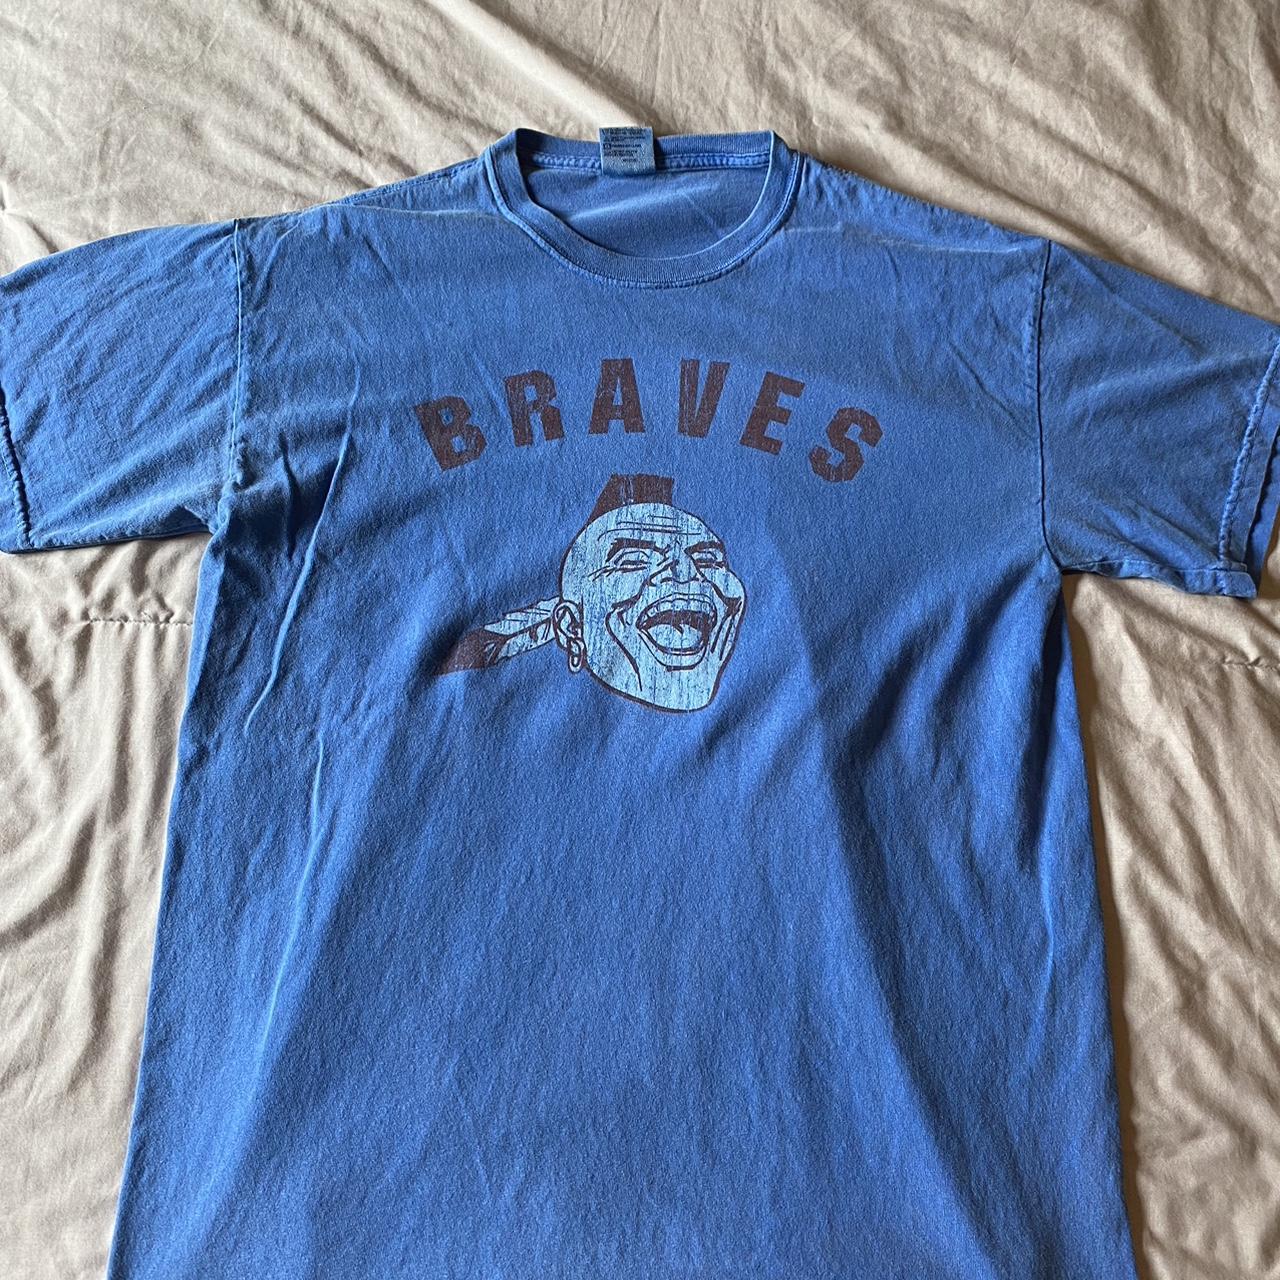 Atlanta Braves x Grateful Dead Shirt Size Large - Depop